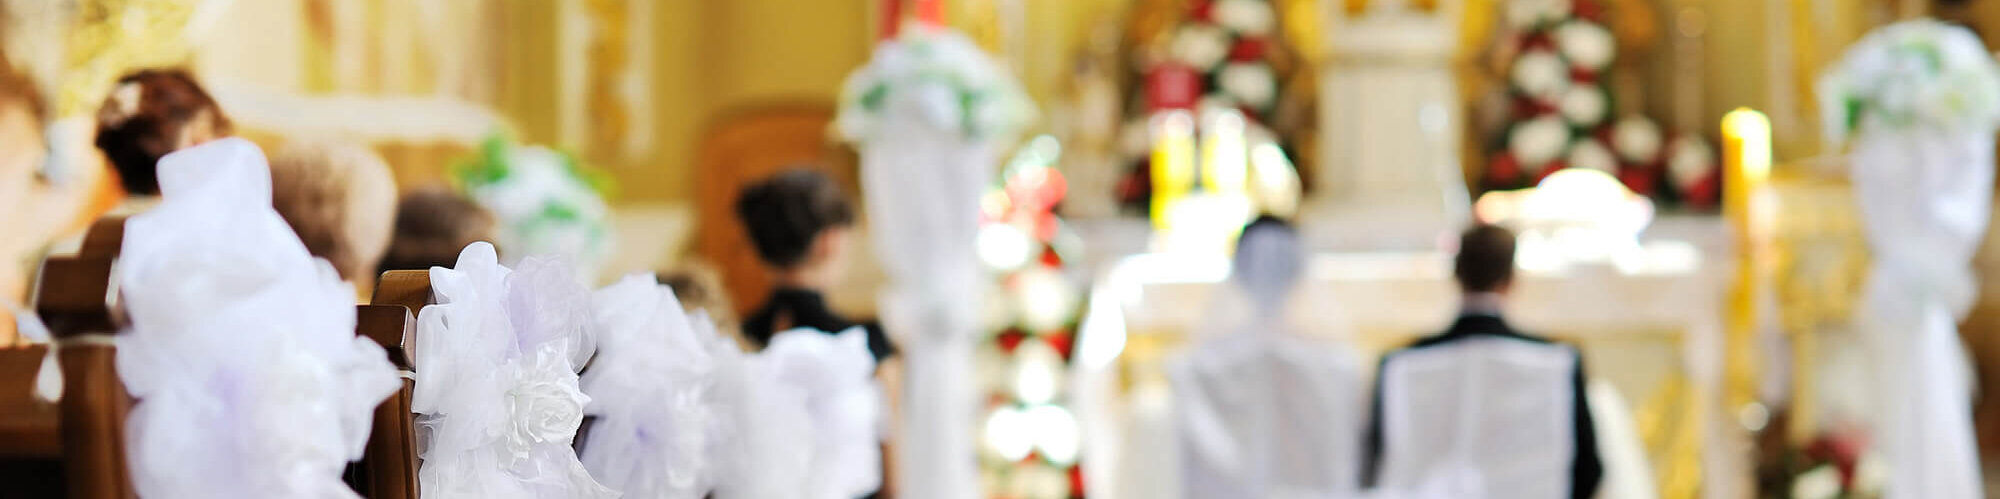 Katholische Trauung bei eurer Hochzeit